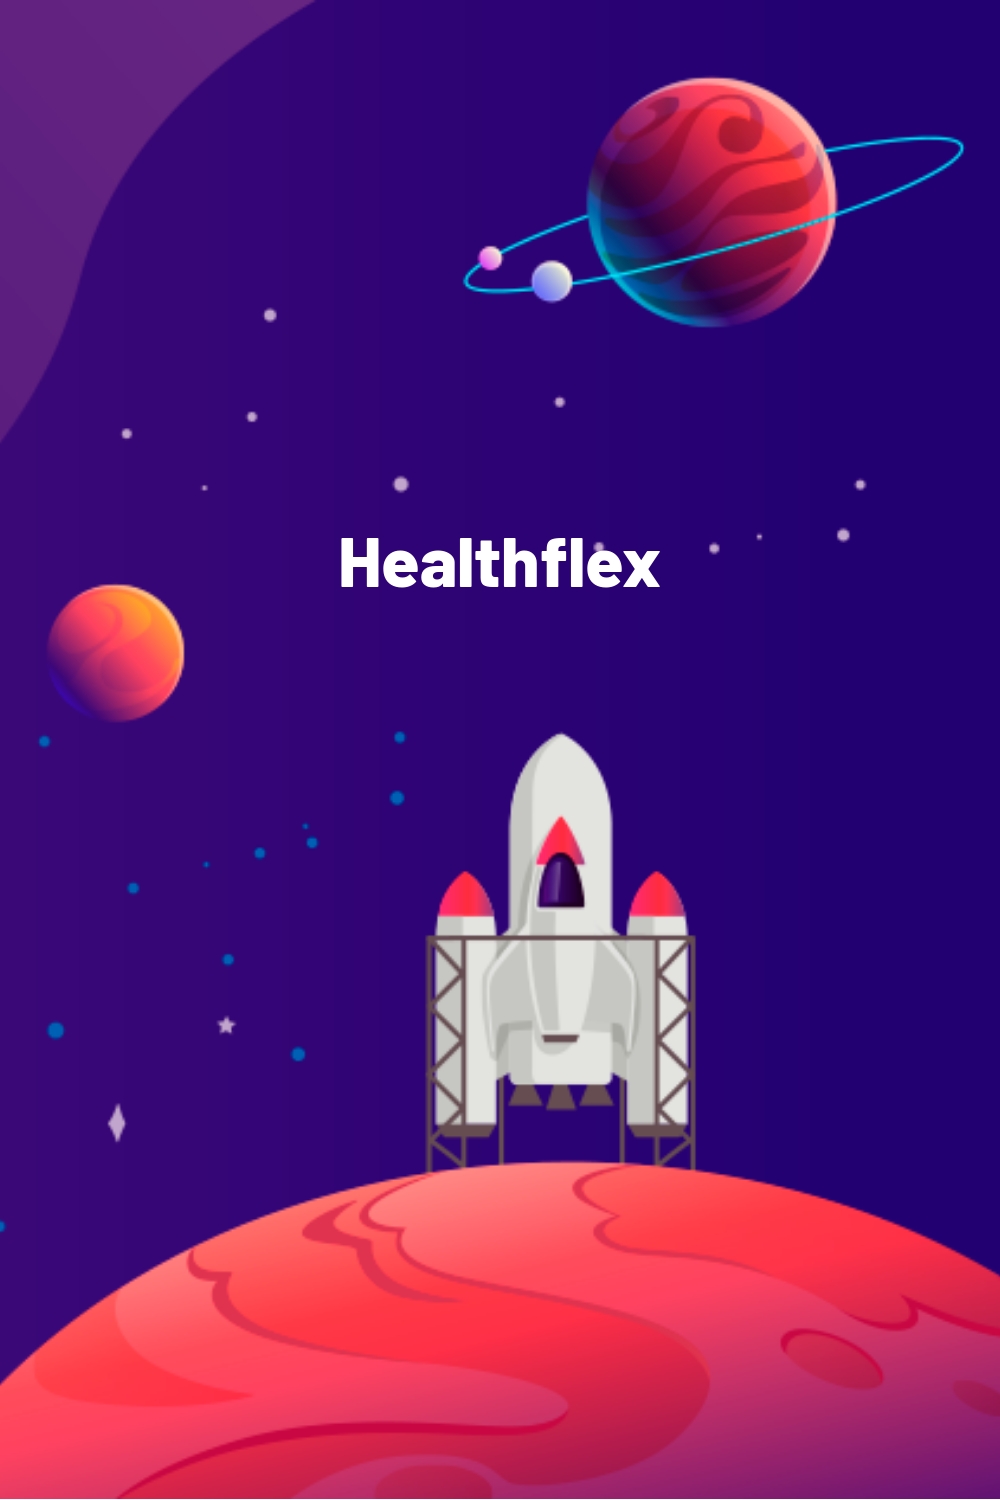 Healthflex